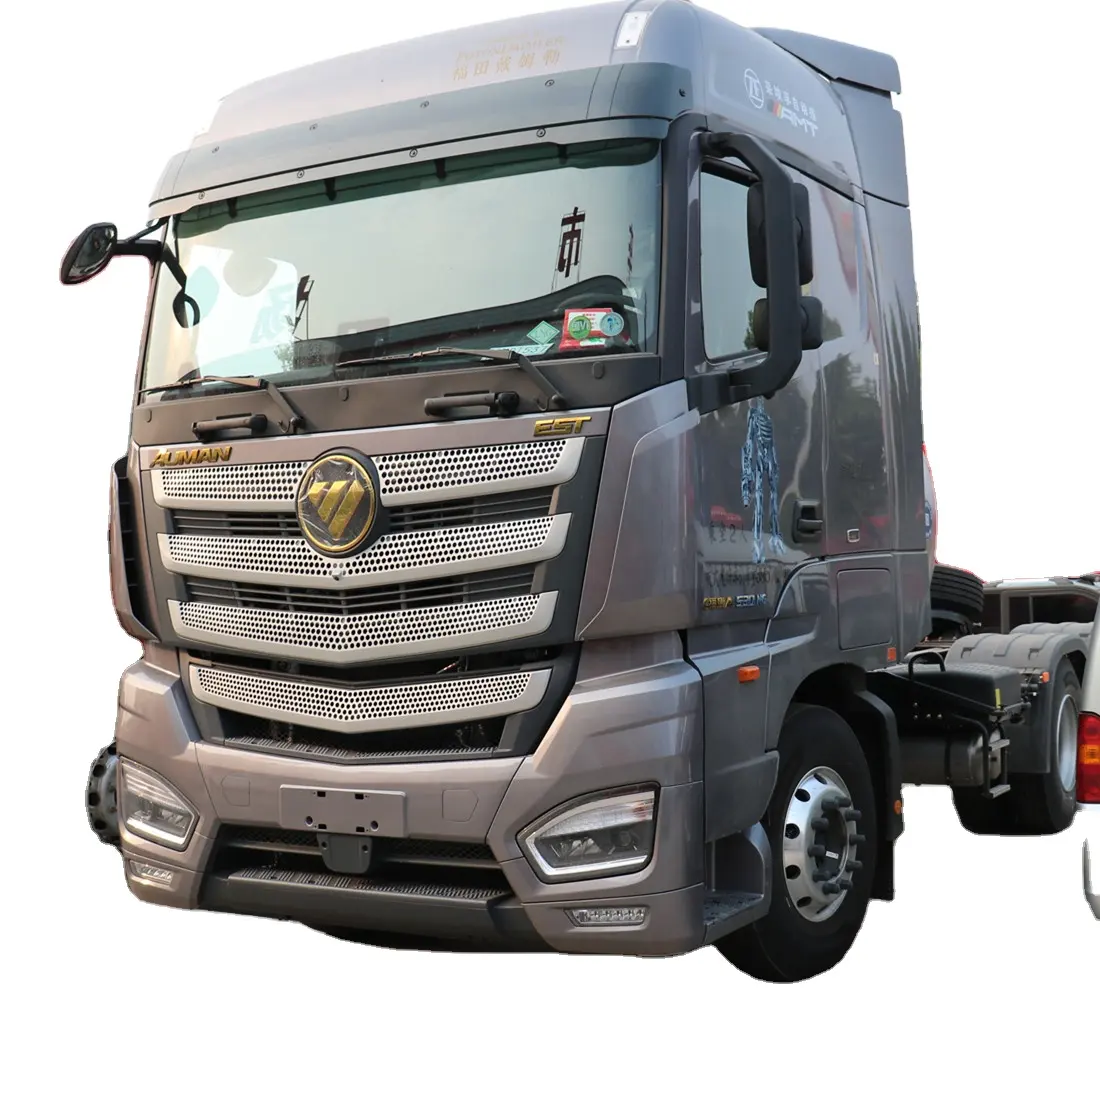 Cabeça de caminhão trator Foton Auman GTL 530hp 6X4 10 rodas GNL usado para vendas mais vendido para o Cazaquistão e Uzbequistão